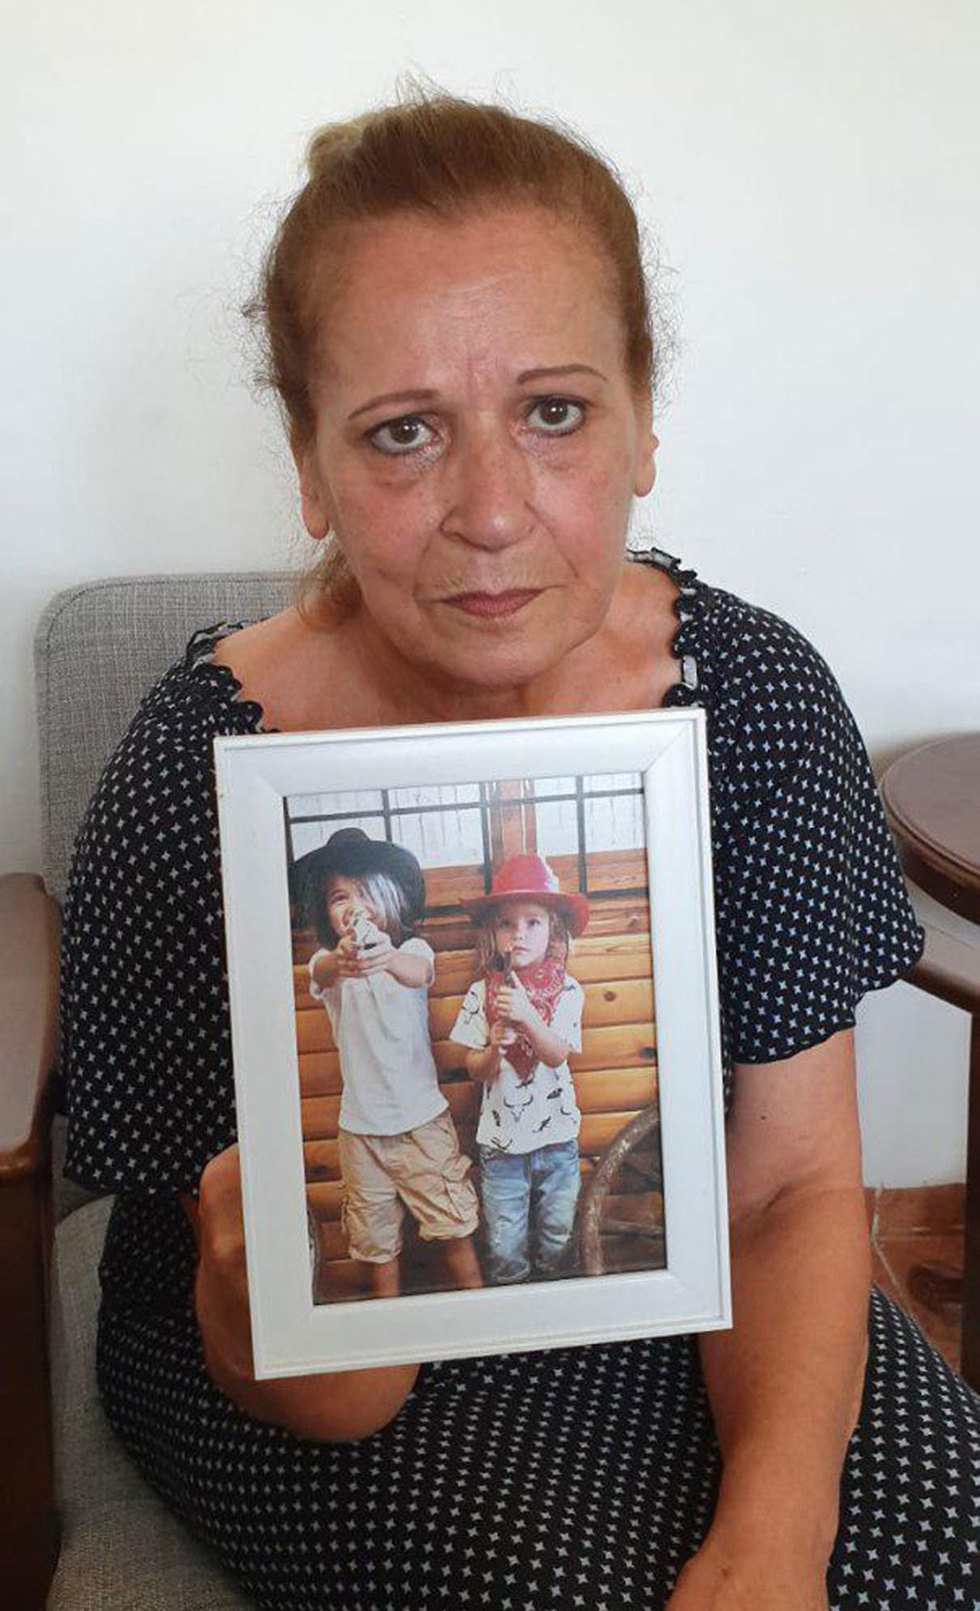  ז'אנט, אמו של הדיג'יי שנרצח במקסיקו רונן גהן (צילום: ליאור אל-חי)